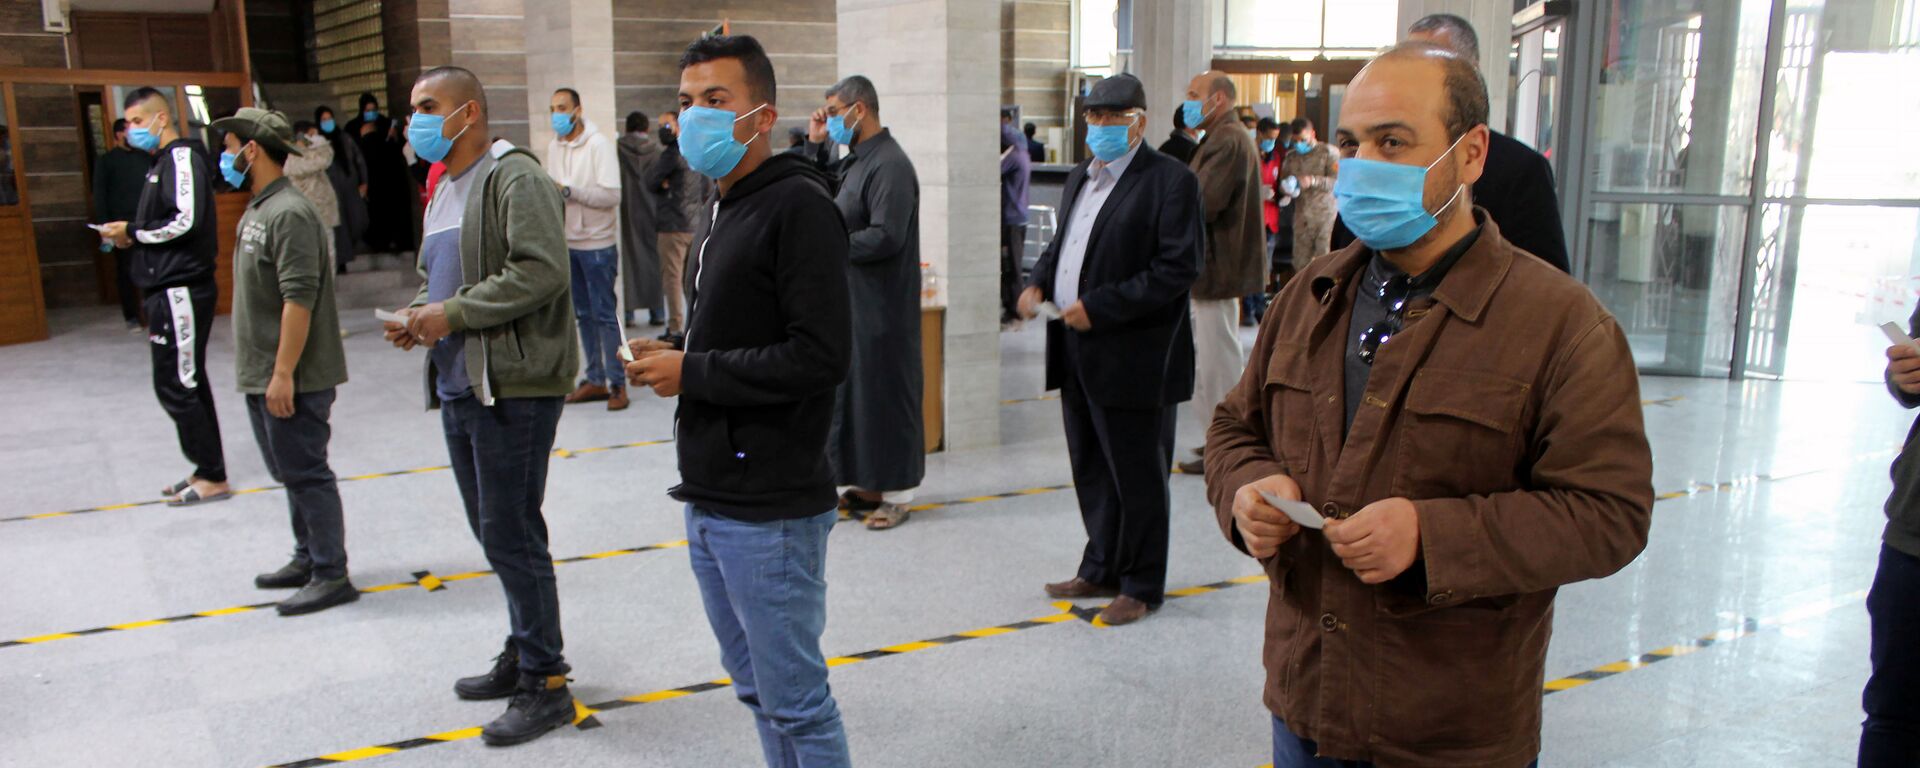 مواطنون يرتدون كمامات طبية كجزء من اجراءات وقائية مرض فيروس كورونا (كوفيد-19)، وهم يقفون على بعد مسافة آمنة وفق معايير منظمة الصحة العالمية، في طوابير في أحد البنوك في مصراتة، ليبيا  22 مارس / آذار 2020 - سبوتنيك عربي, 1920, 31.07.2021